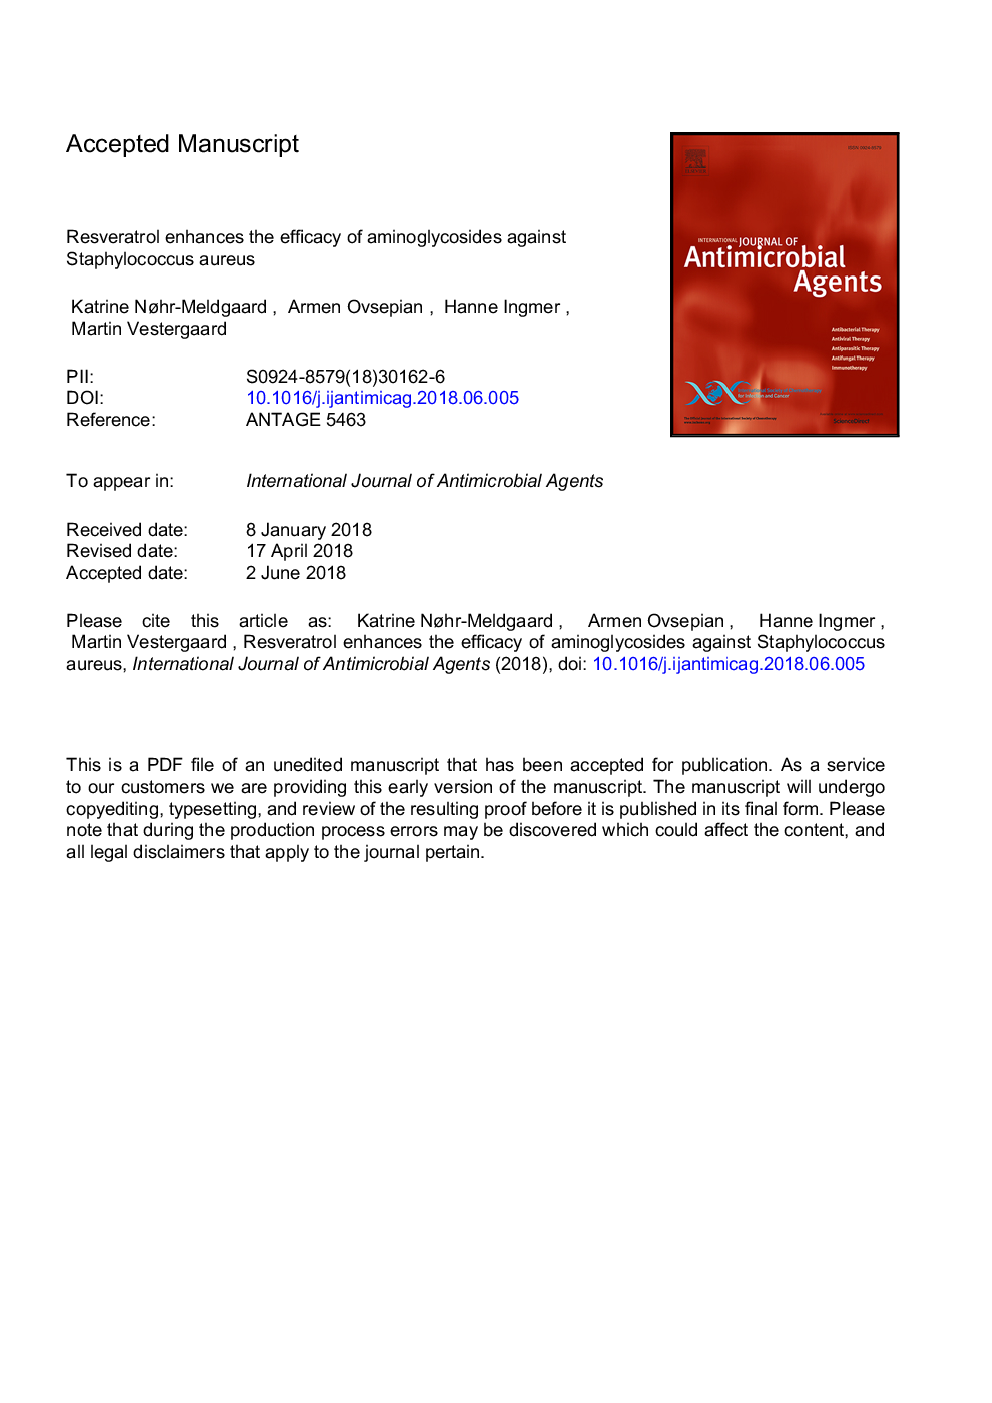 رسکوراترول اثر آمینوگلیکوزید ها را نسبت به استافیلوکوک اورئوس افزایش می دهد